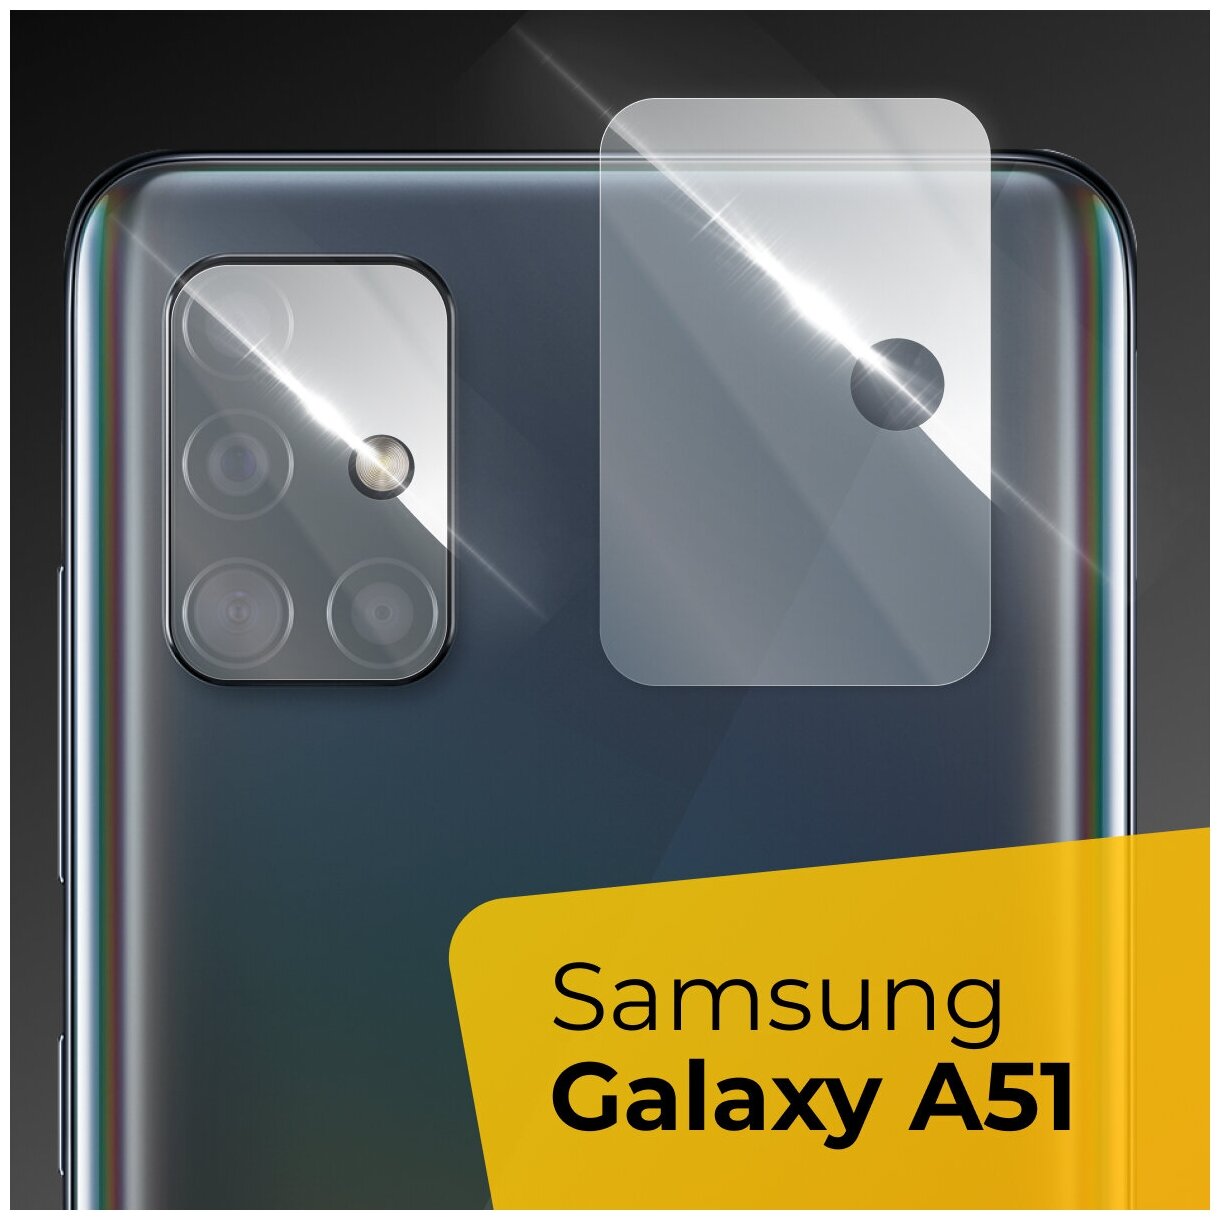 Противоударное защитное стекло для камеры телефона Samsung Galaxy A51 / Тонкое прозрачное стекло на камеру смартфона Самсунг Галакси А51